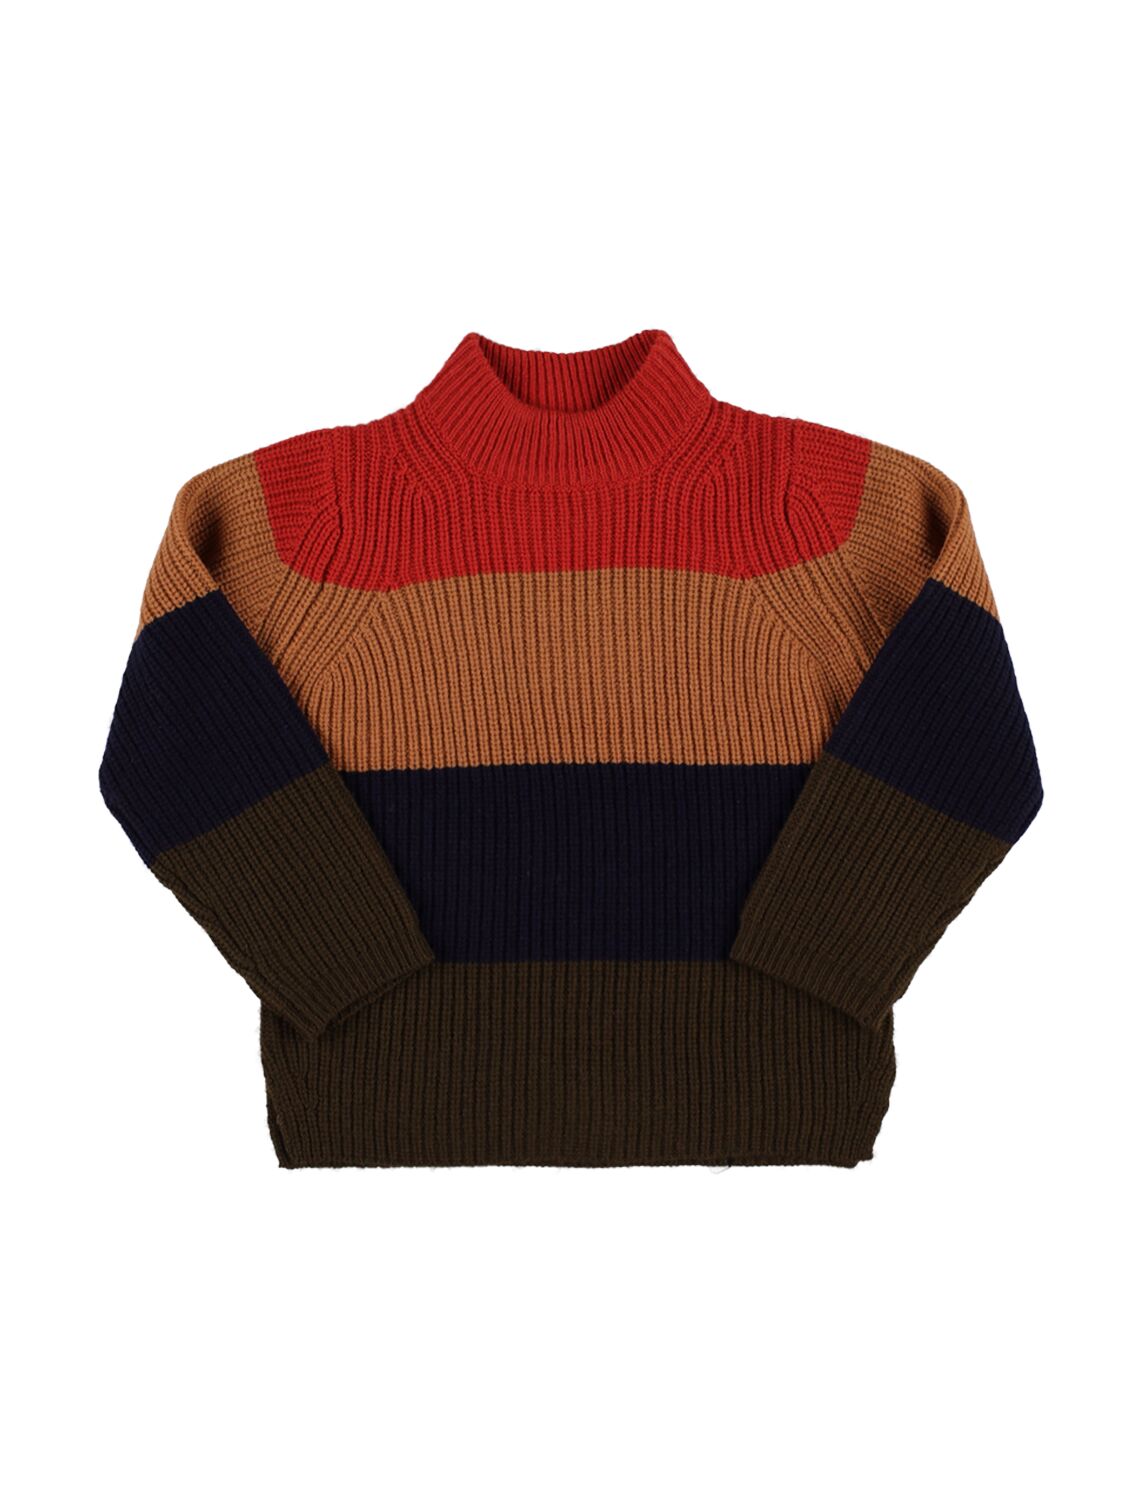 Liewood Kids' Striped Wool Knit Jumper In Multicolor